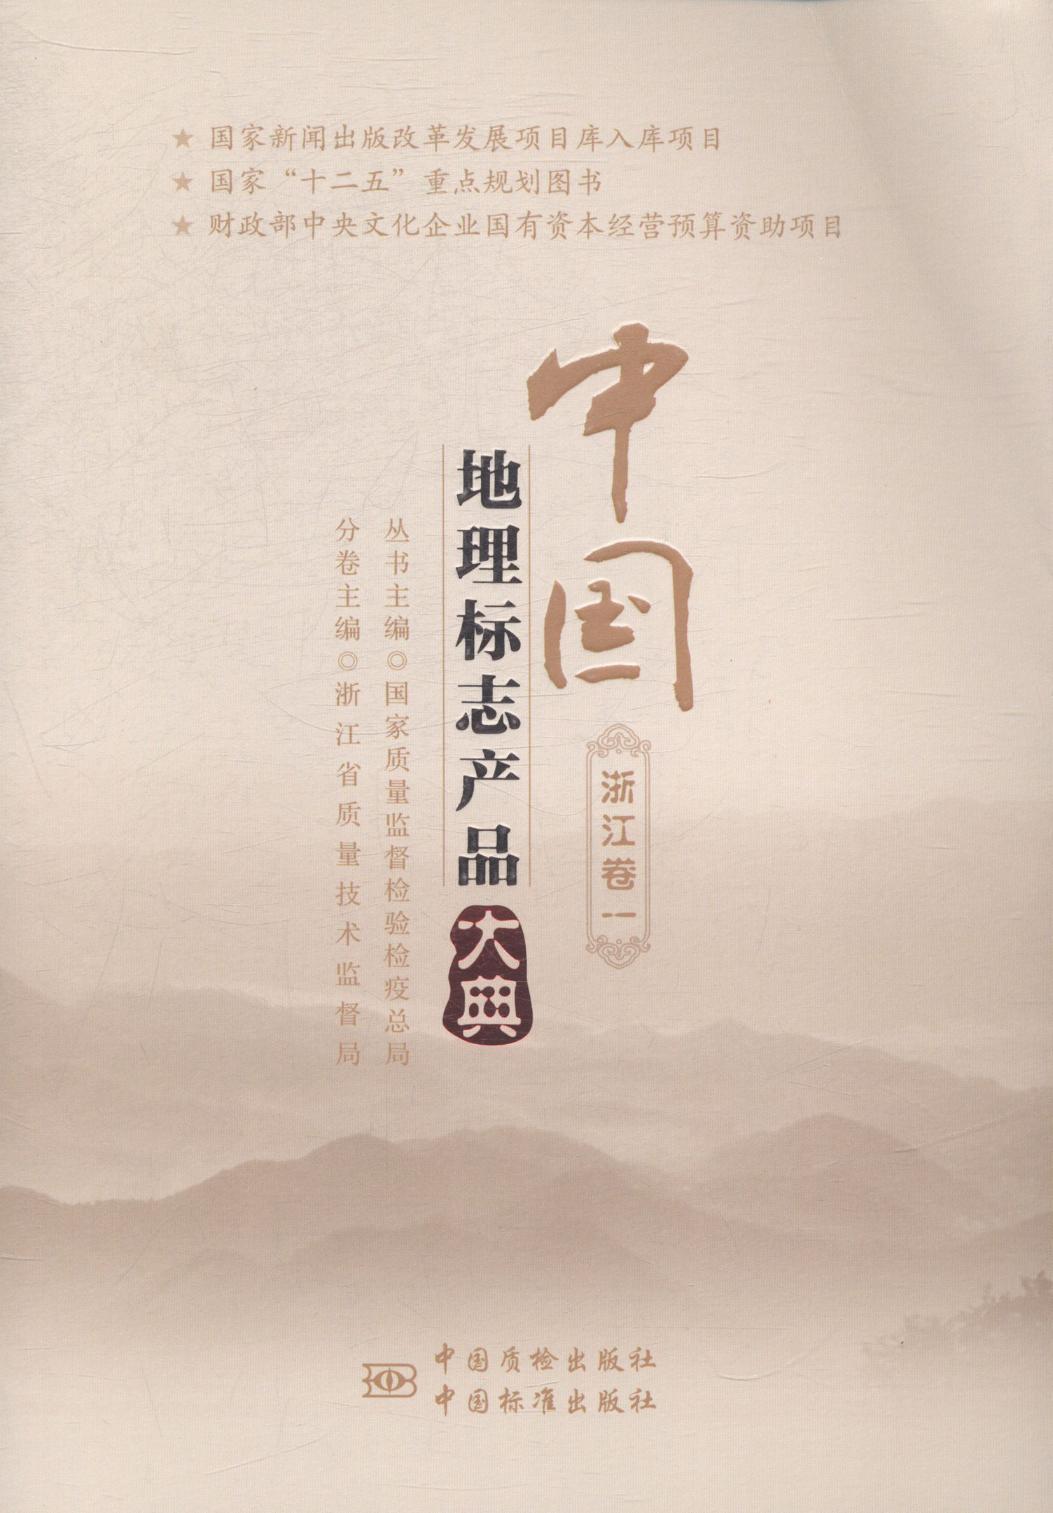 全新正版 中国地理标志产品大典:一:浙江卷 中国质检出版社 9787502639969